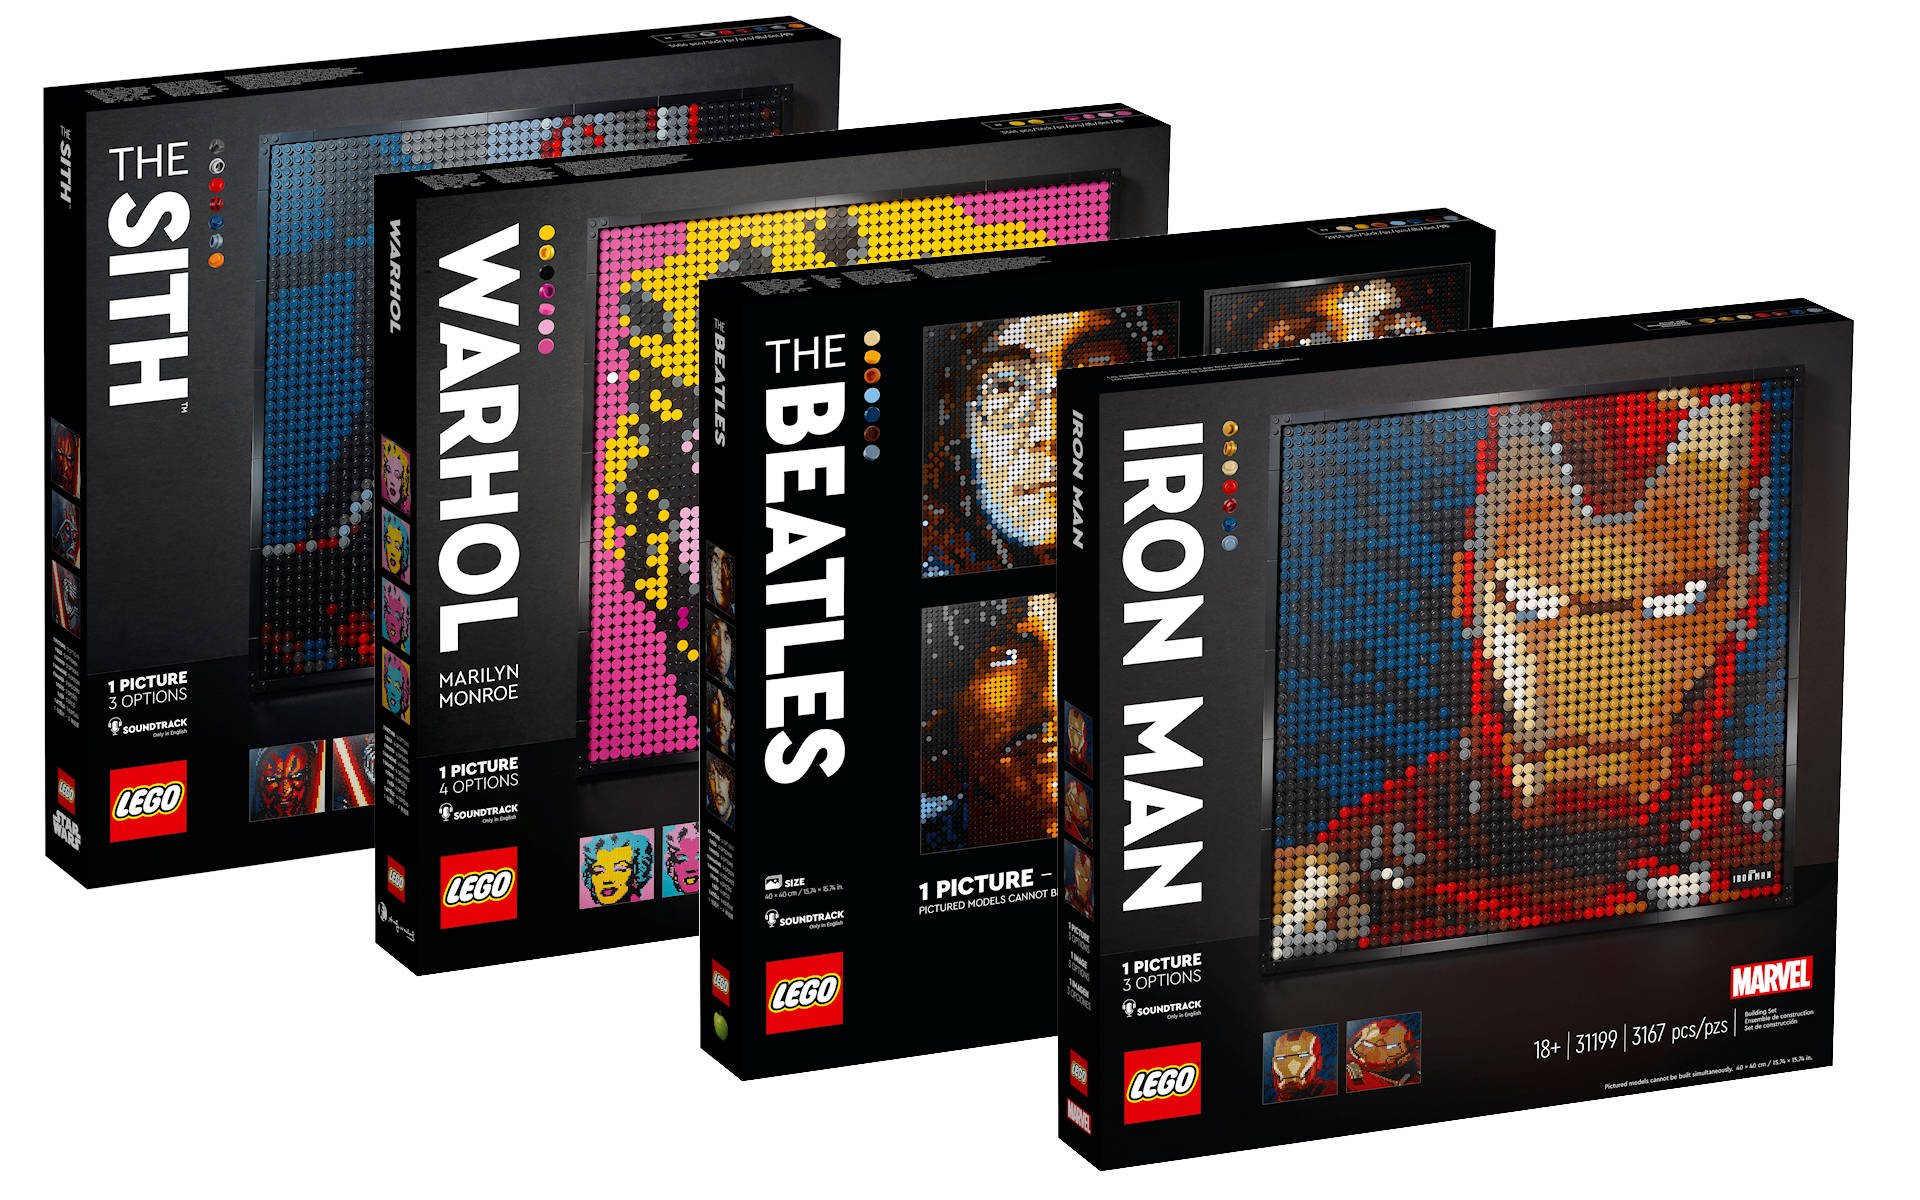 LEGO Art: i mosaici in mattoncini dei nostri temi preferiti - Tom's Hardware